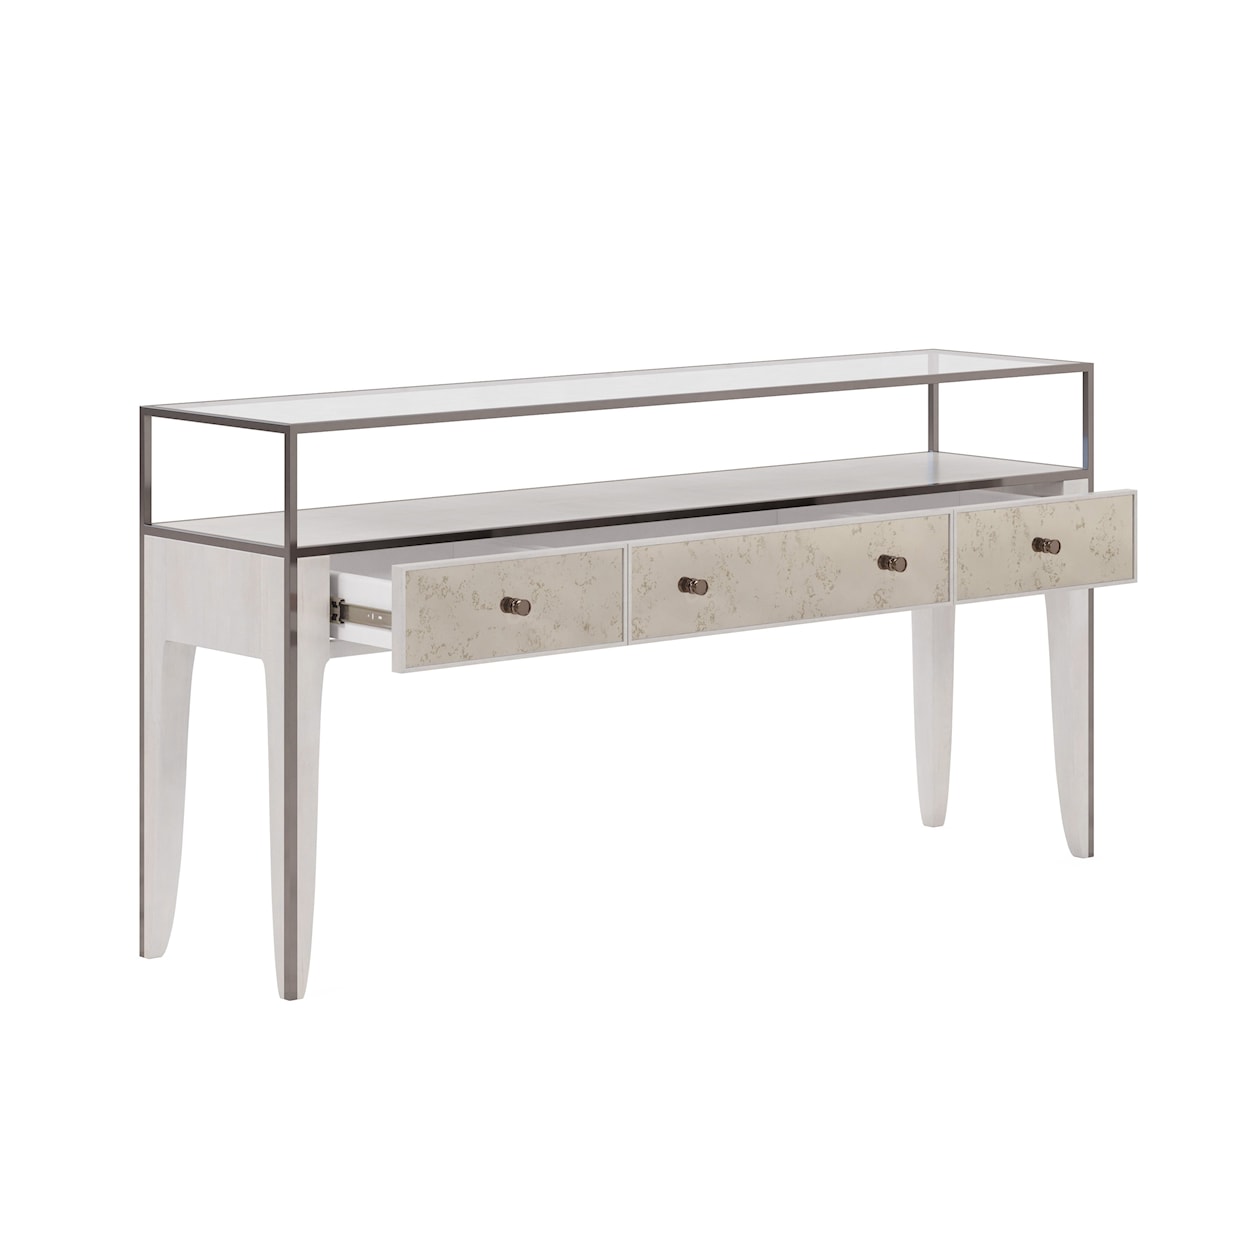 A.R.T. Furniture Inc Mezzanine Console Table